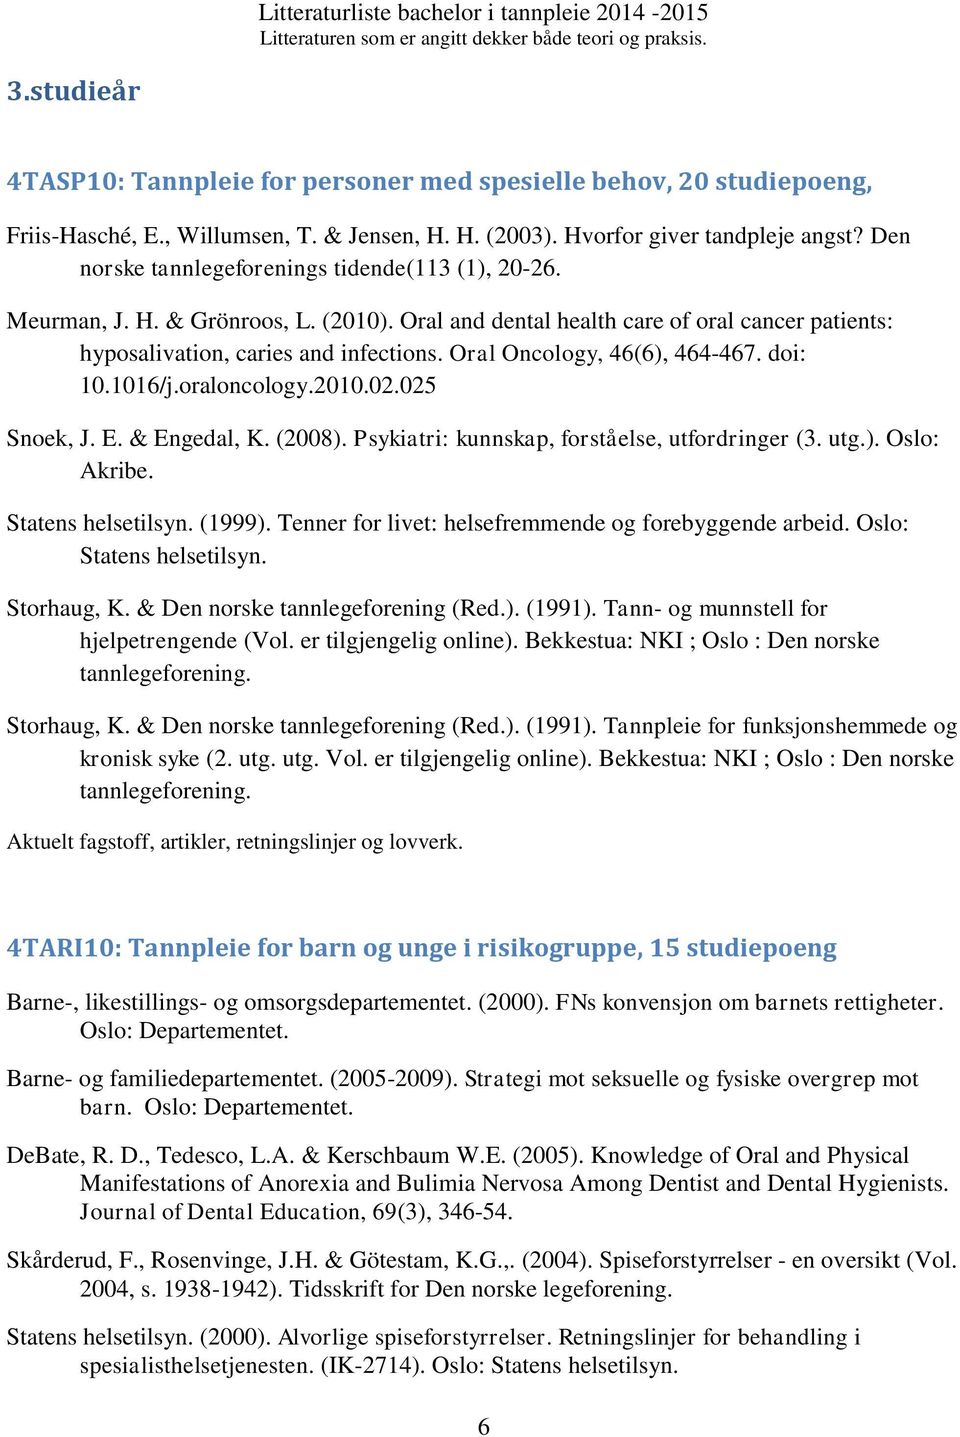 Oral Oncology, 46(6), 464-467. doi: 10.1016/j.oraloncology.2010.02.025 Snoek, J. E. & Engedal, K. (2008). Psykiatri: kunnskap, forståelse, utfordringer (3. utg.). Oslo: Akribe. Statens helsetilsyn.